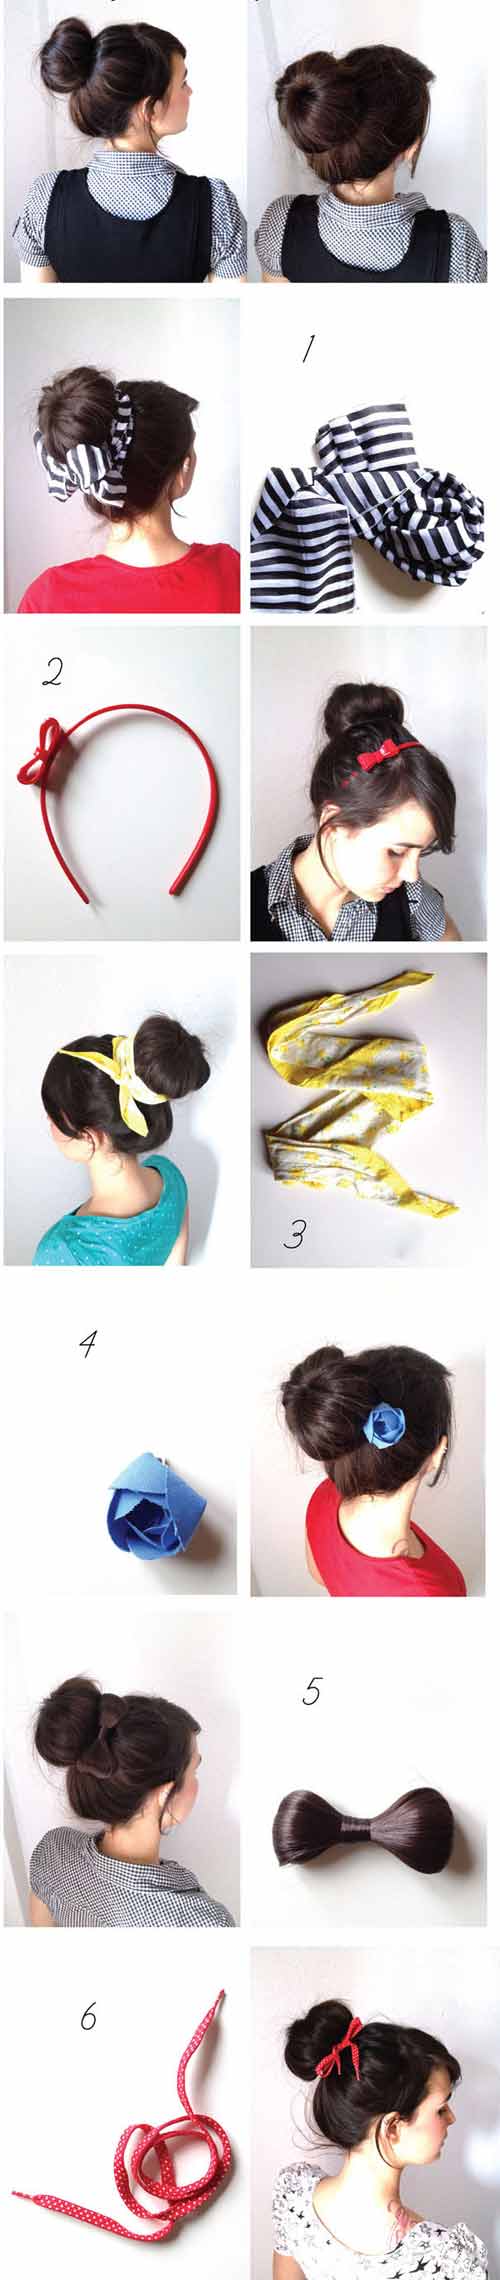 5 kiểu tóc ’cứu’ bạn gái ngày đầu bẩn - 1